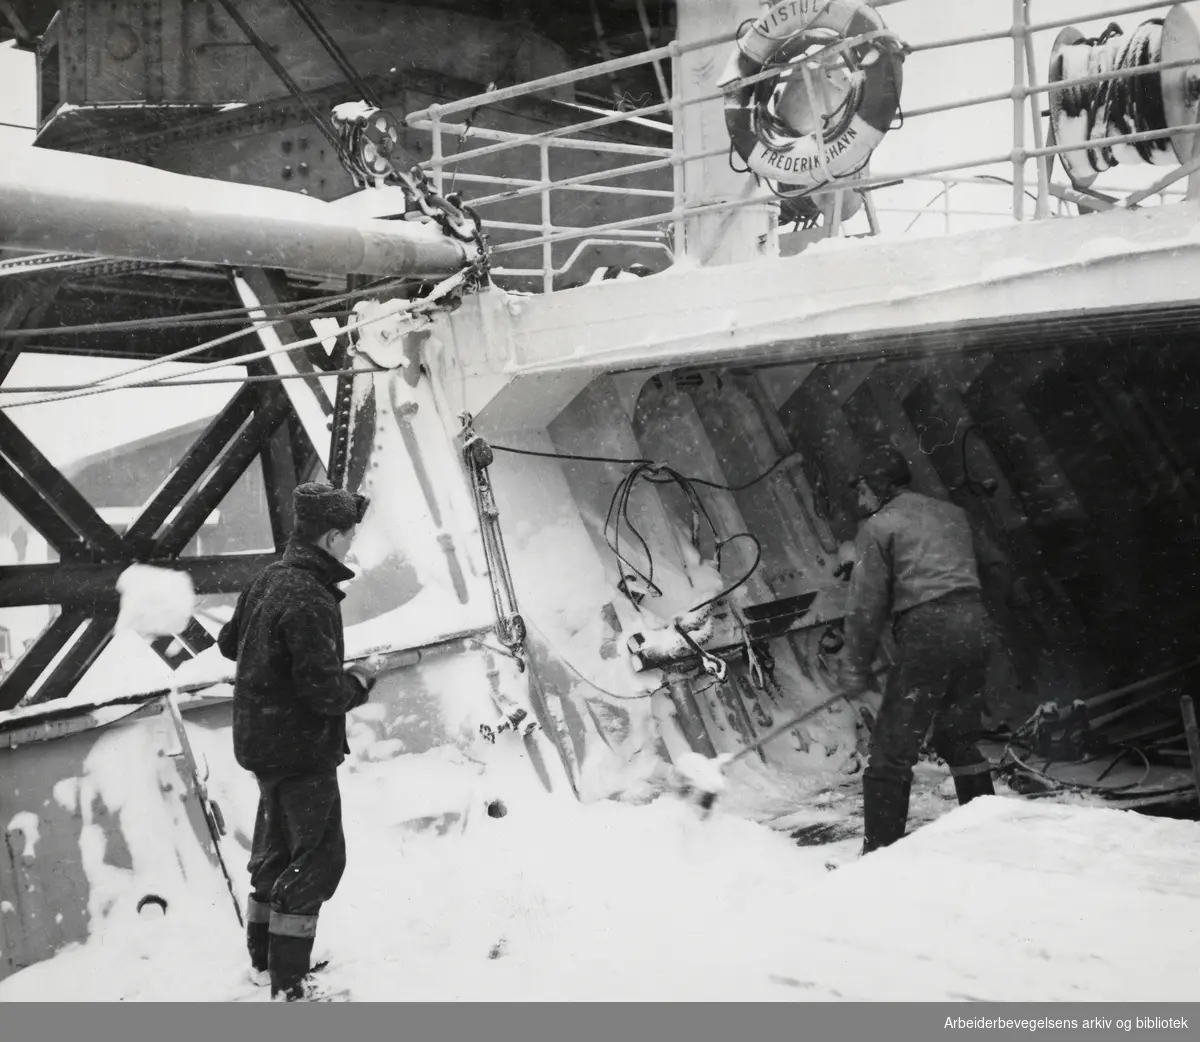 Voldsomt snøvær i Oslo. Ombord på "Vistula" av Fredrikshavn måkte mannskapet snø og gjorde alt klart til avgang, så Danskebåten kunne gi seg i kast med å bryte isblokaden. Februar 1954